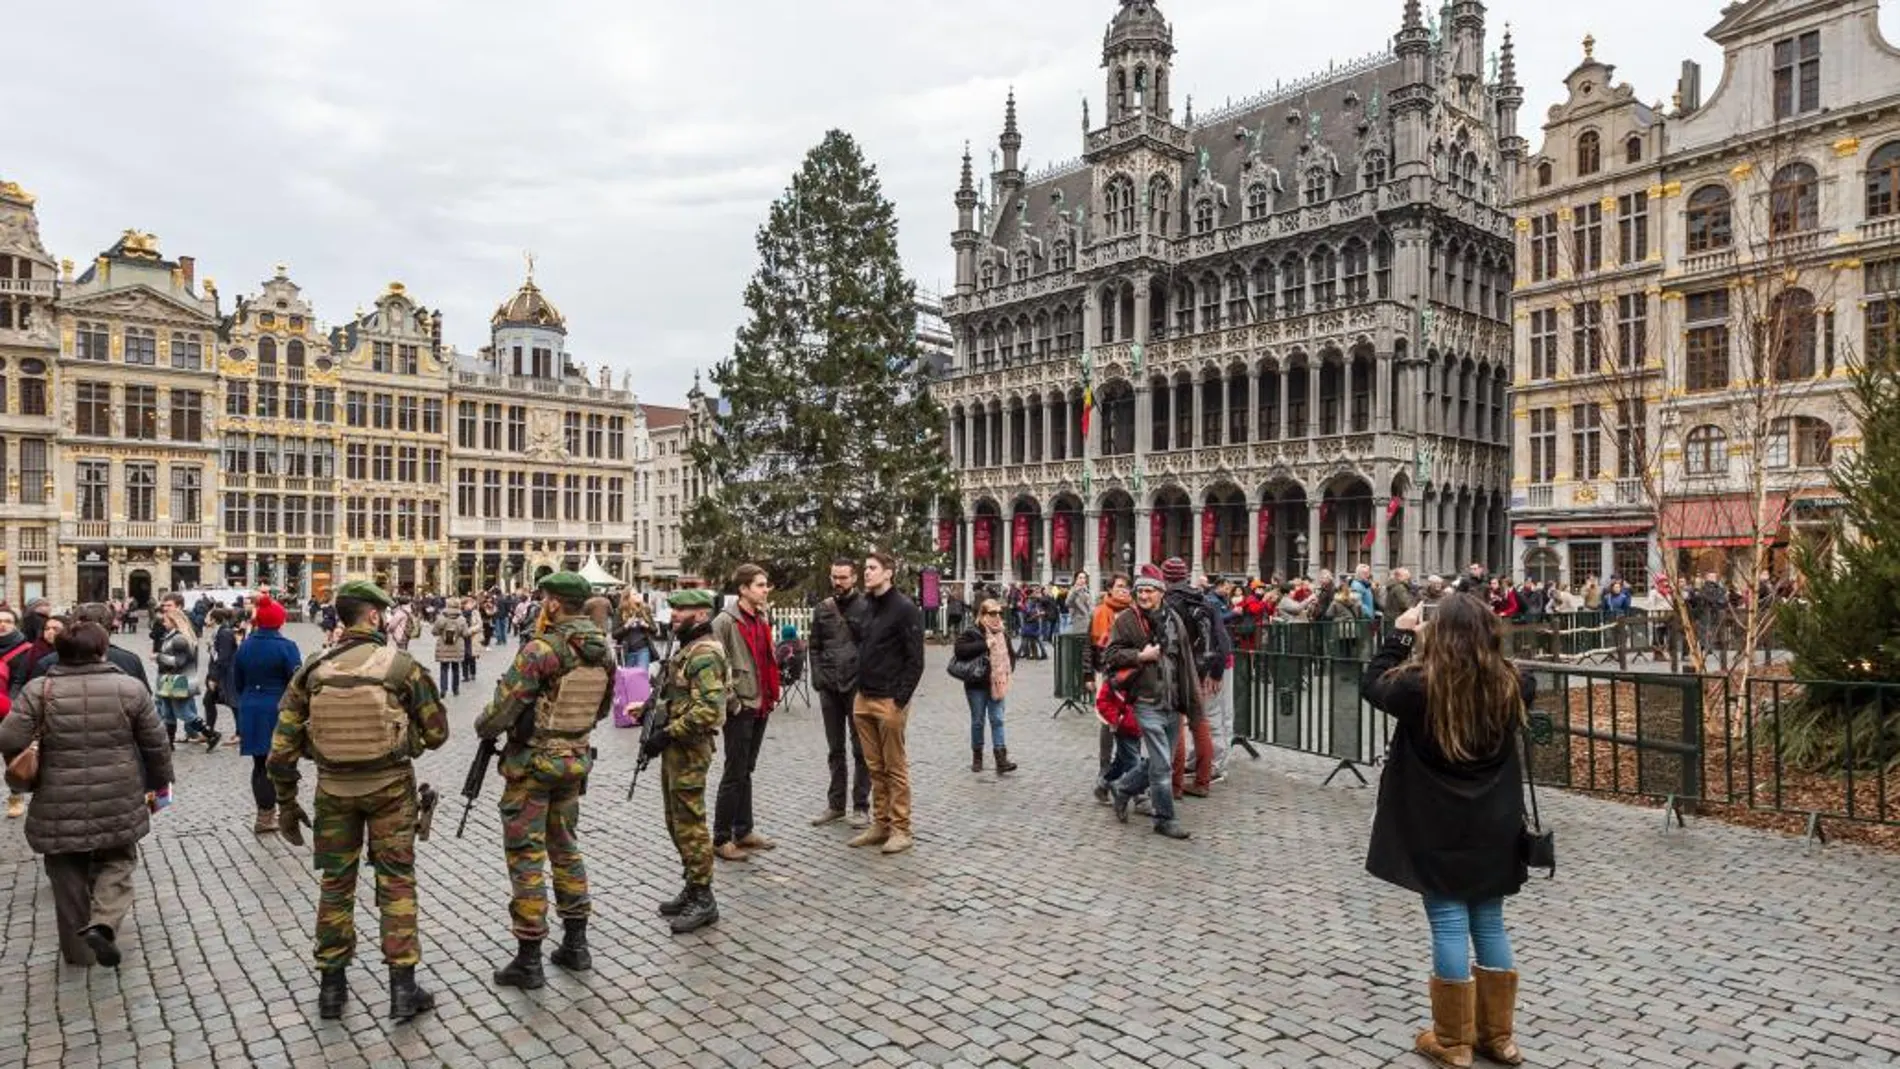 Soldados patrullas en la Grand Place de Bruselas.